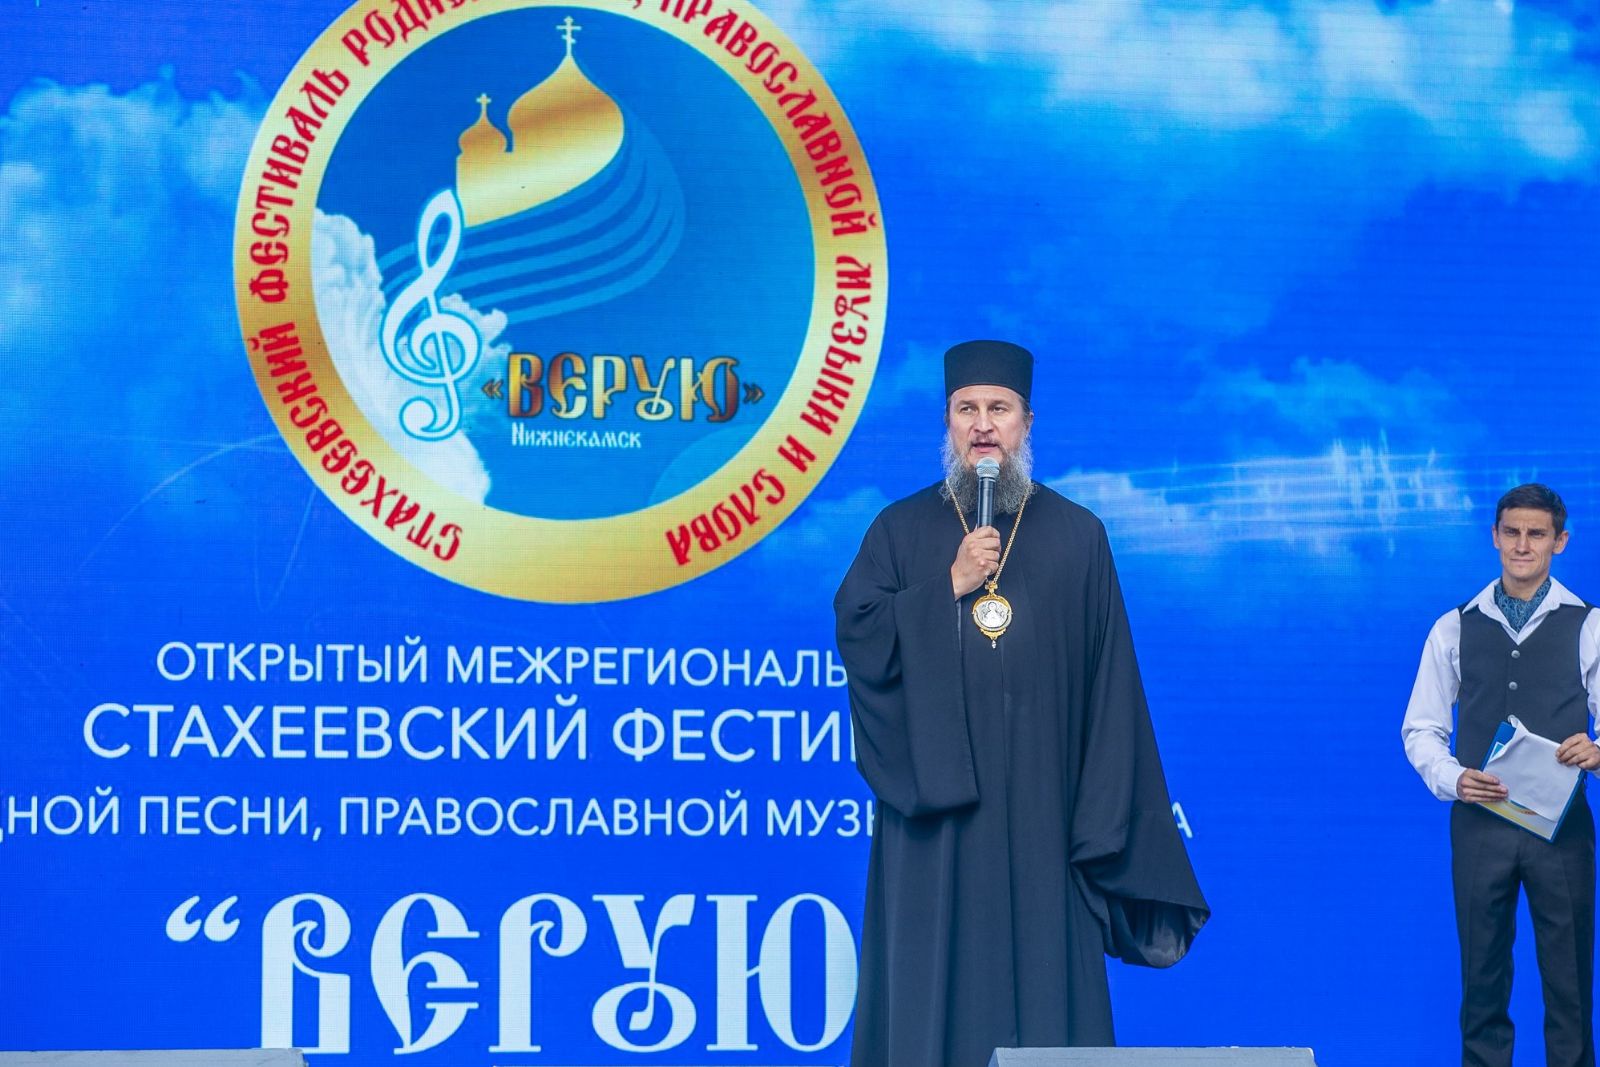 Челнинцы приняли участие в фестивале «Верую», прошедшем в Нижнекамске